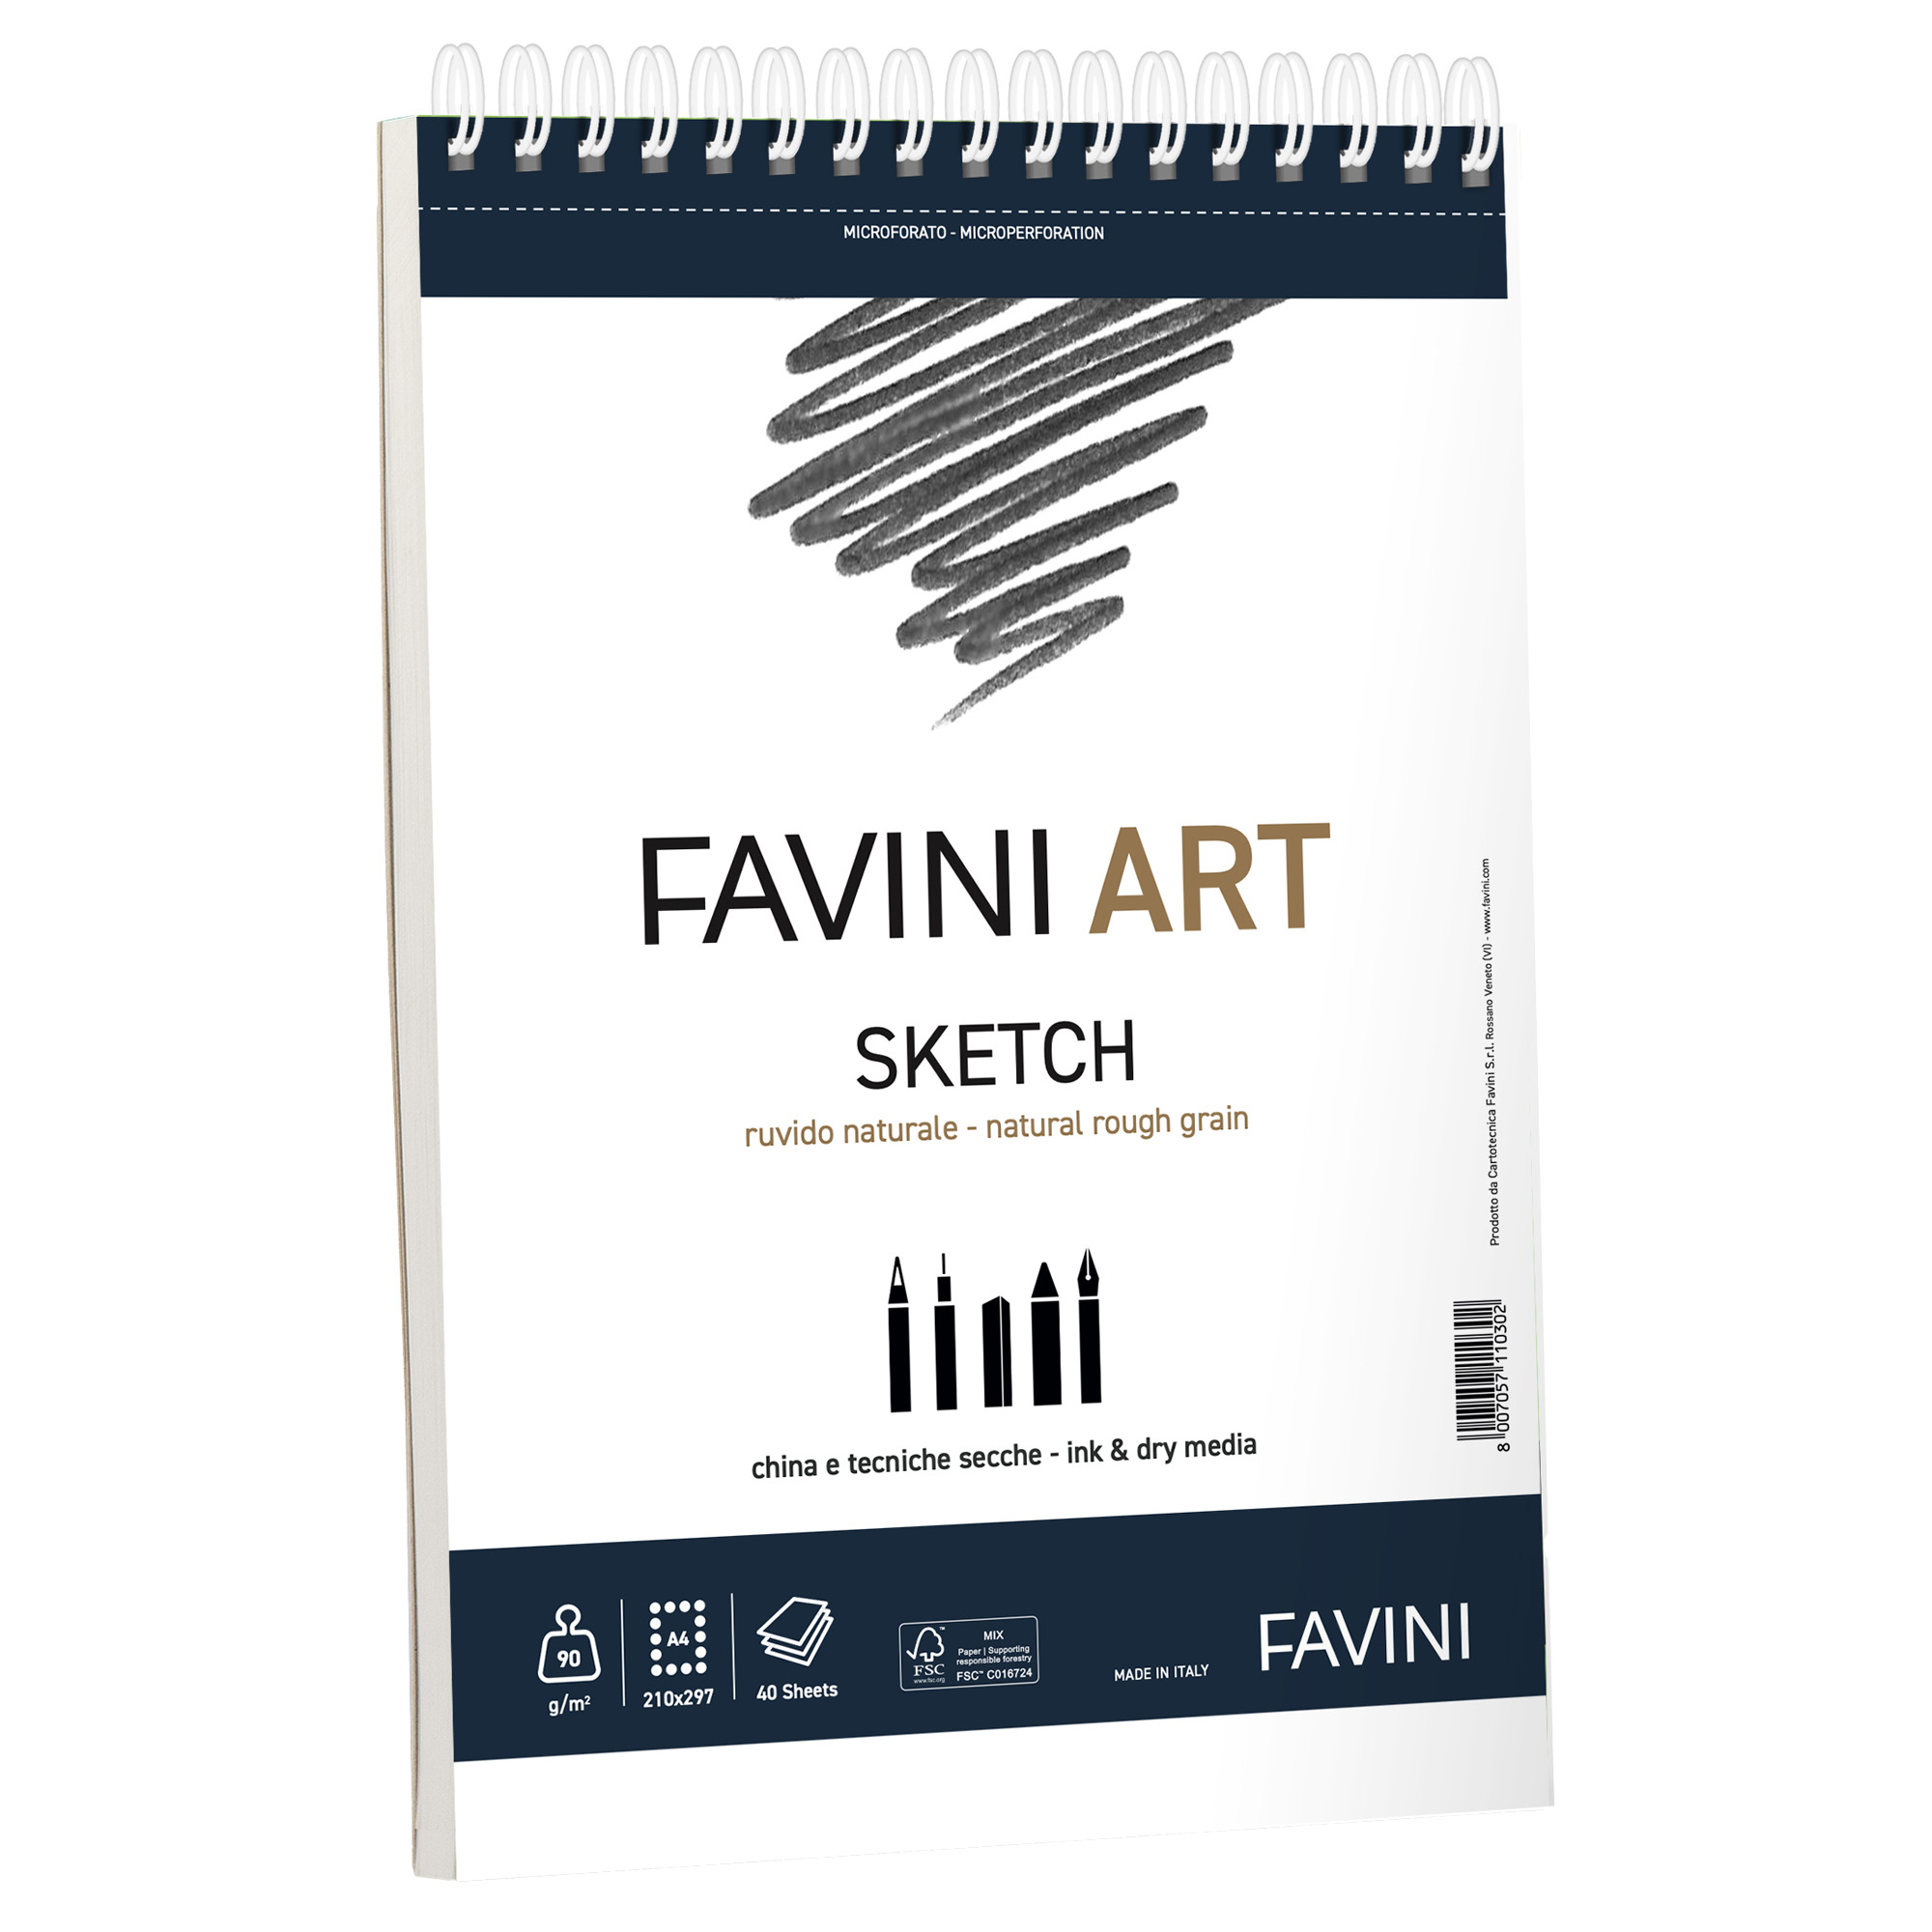 CF5 FAVINI ART SKETCH SPIRALATO 90G